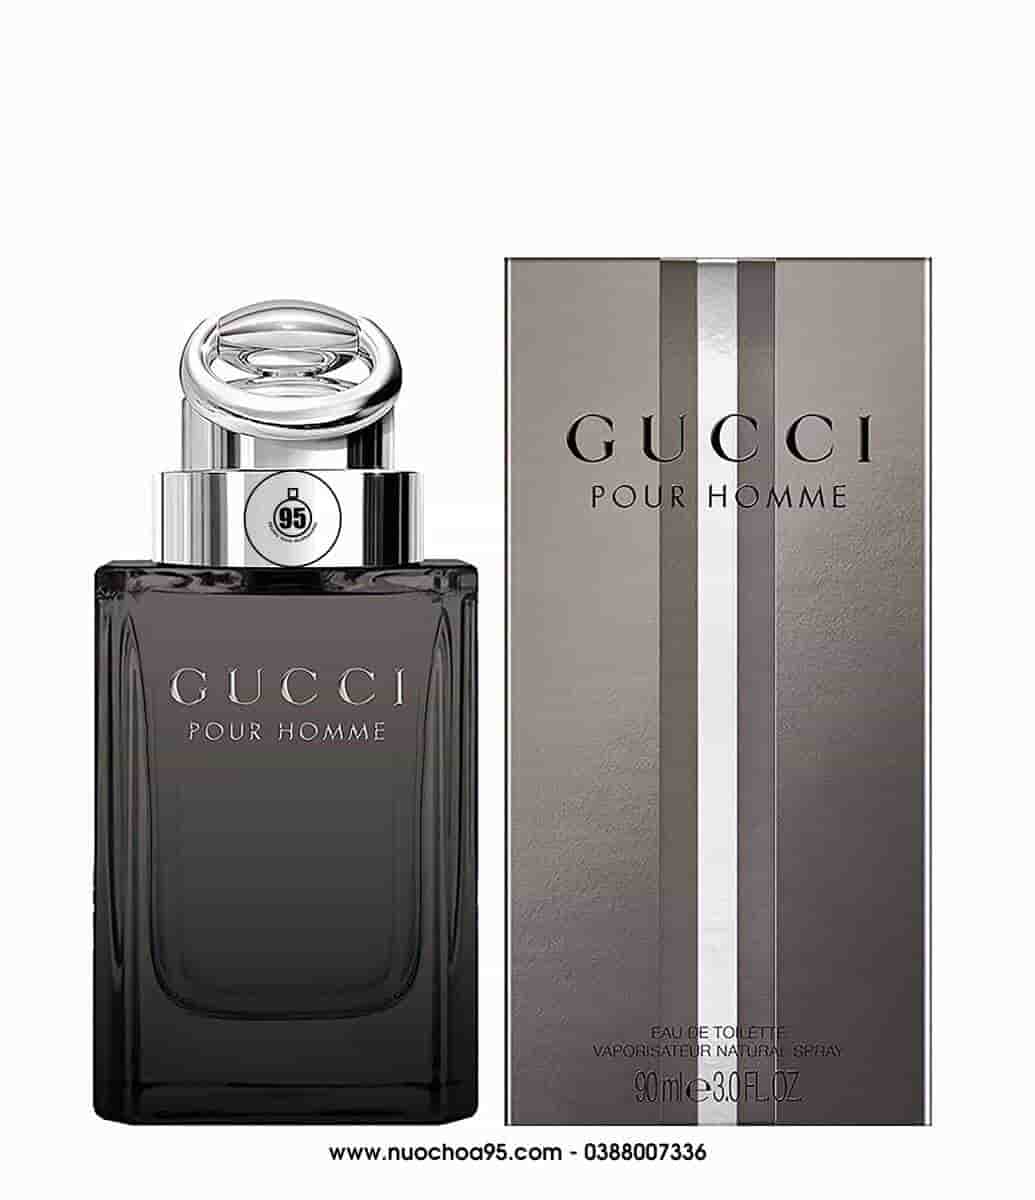 Nước hoa Gucci Pour Homme 